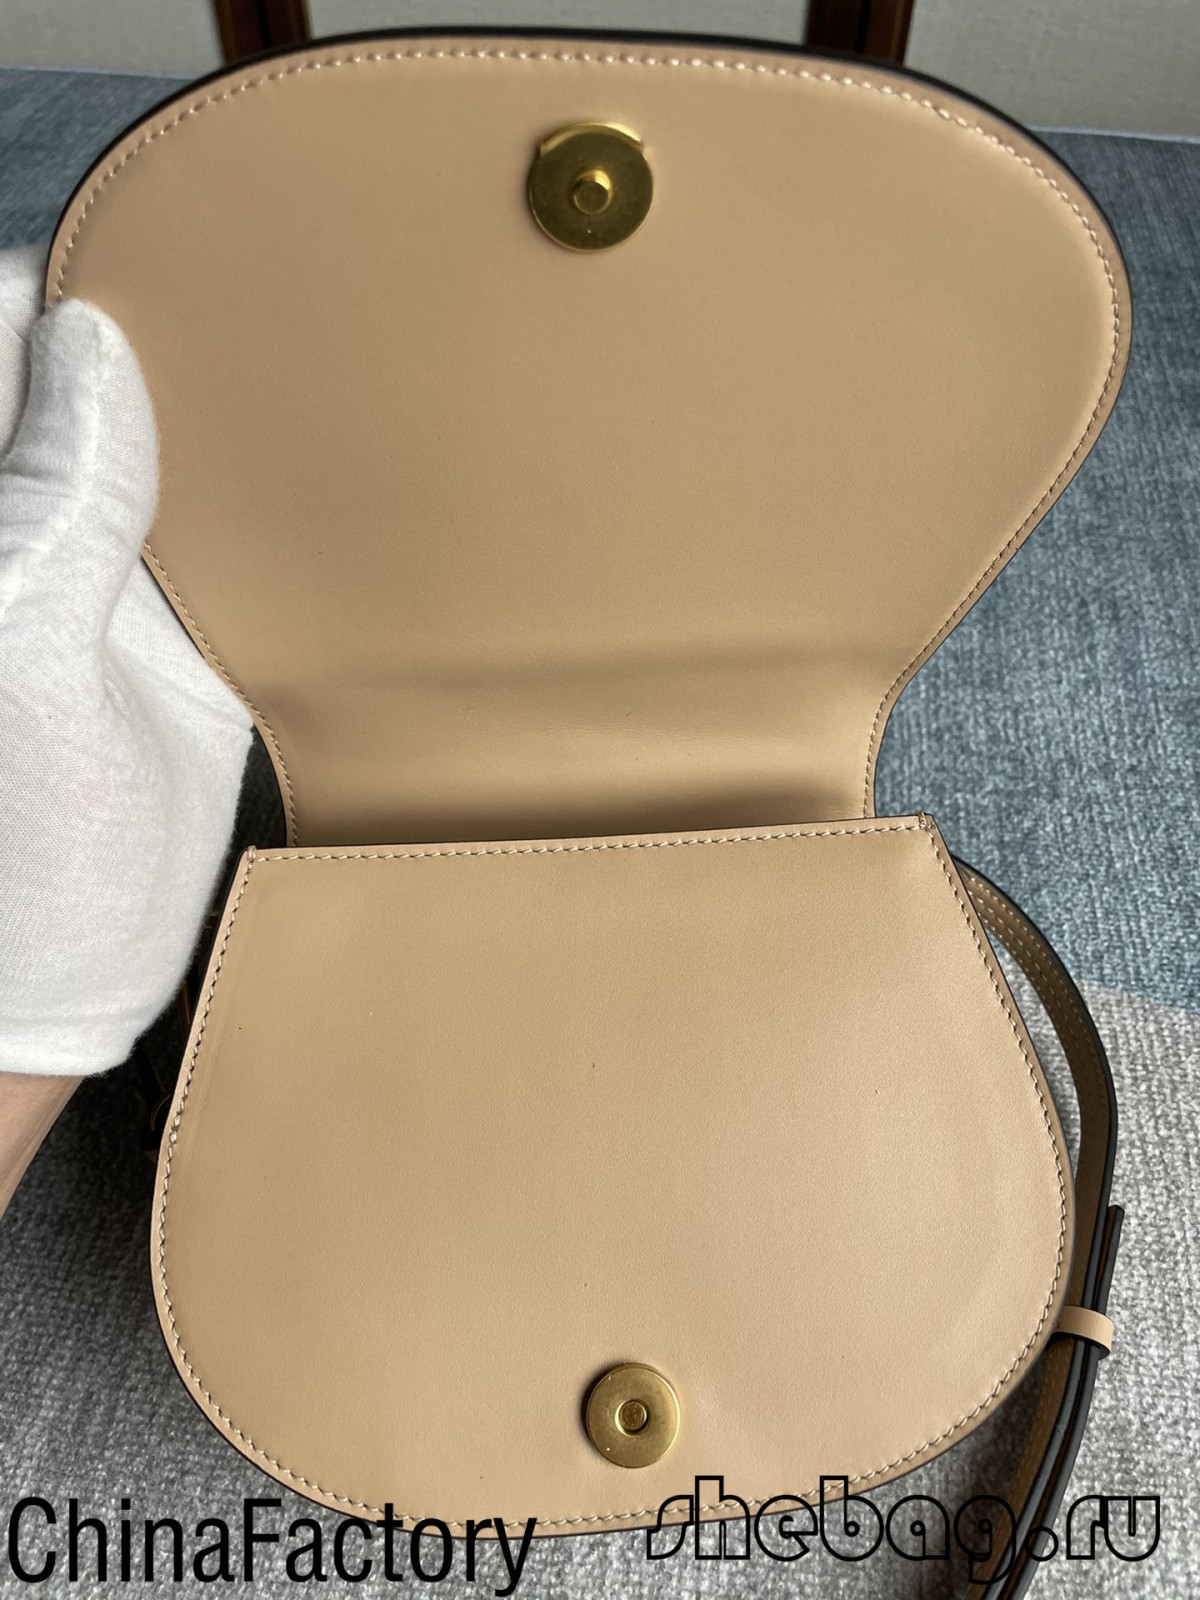 Fábrica de réplicas de saco do nilo de melhor qualidade na China (2022 mais quente)-Loja online de bolsa Louis Vuitton falsa de melhor qualidade, bolsa de designer de réplica ru